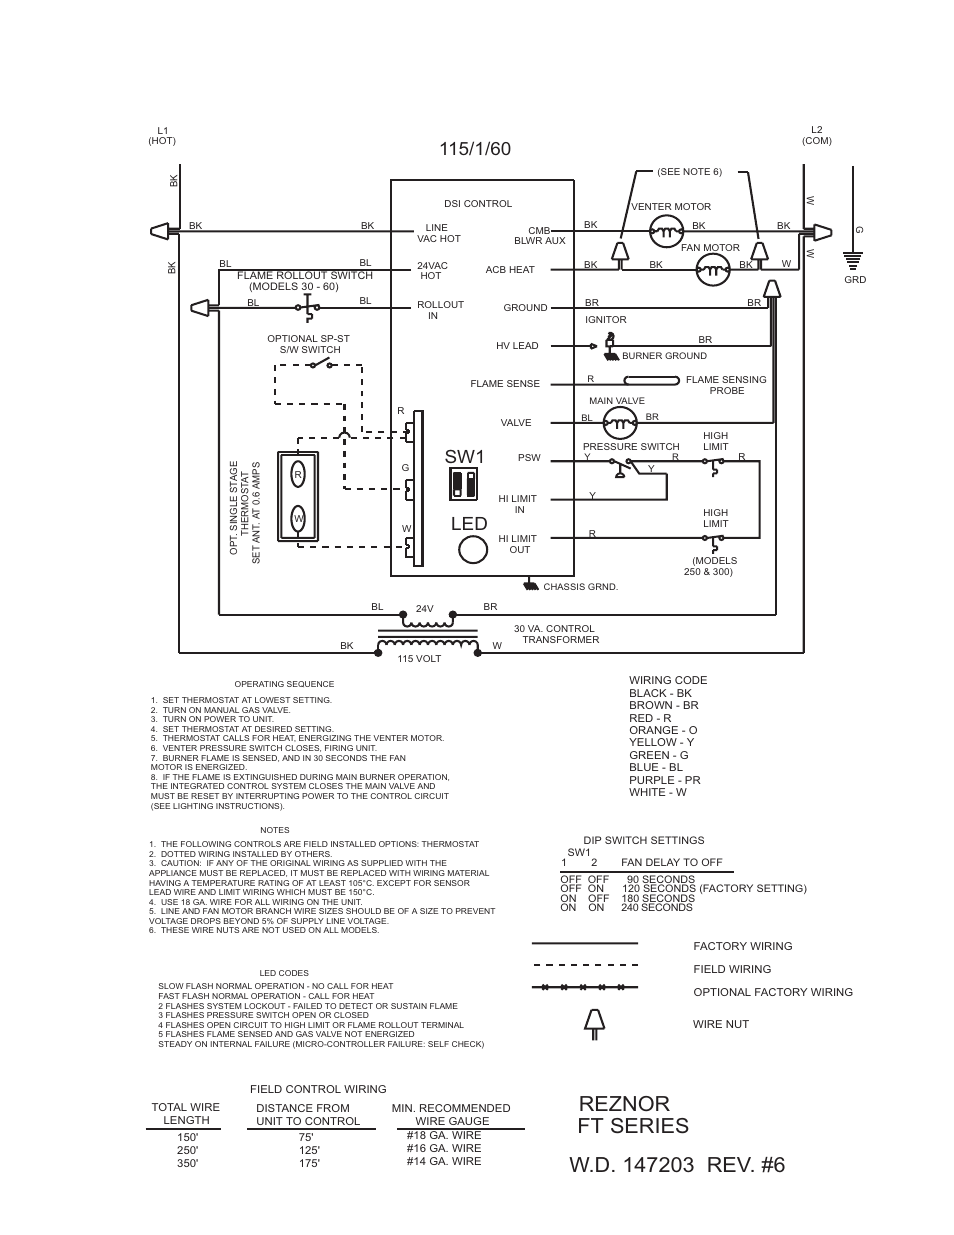 reznor xl wiring diagram